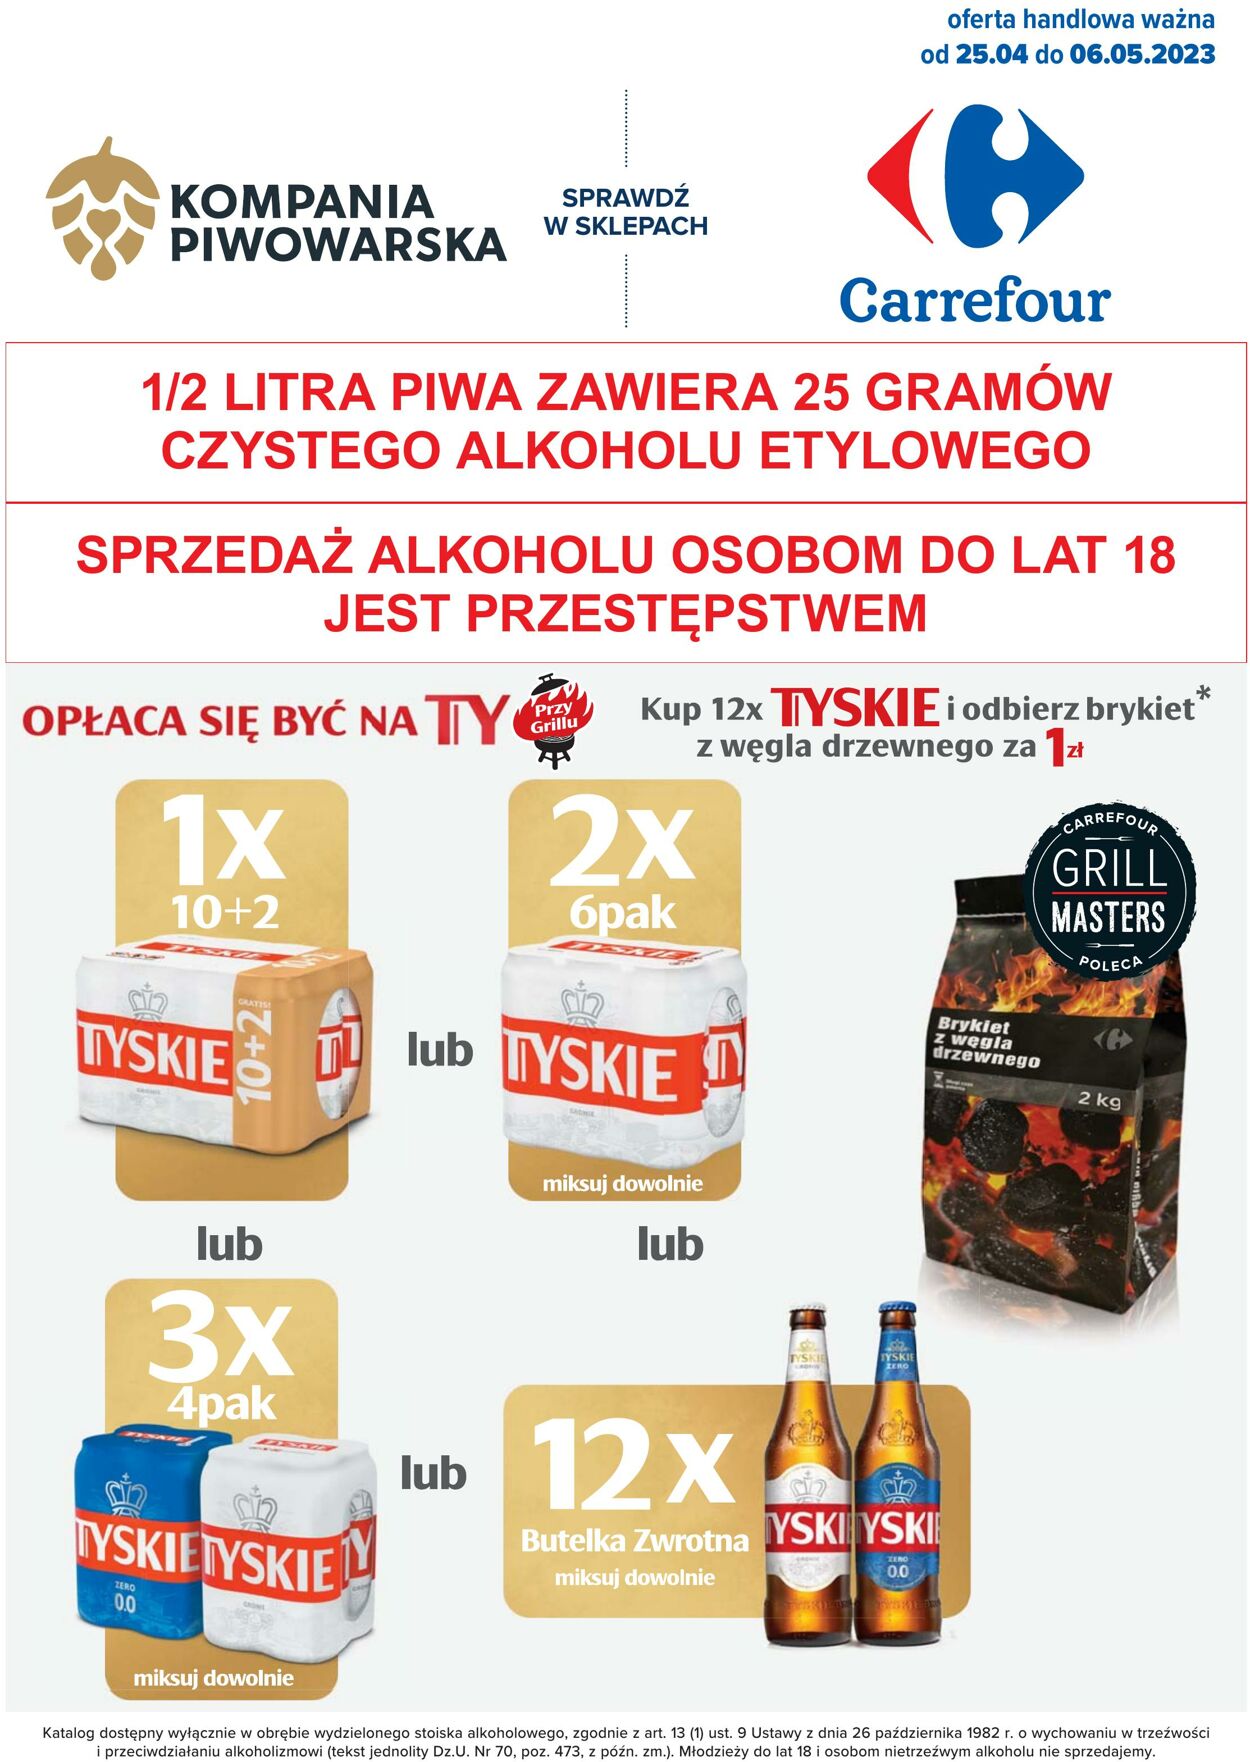 Carrefour Gazetka od 25.04.2023